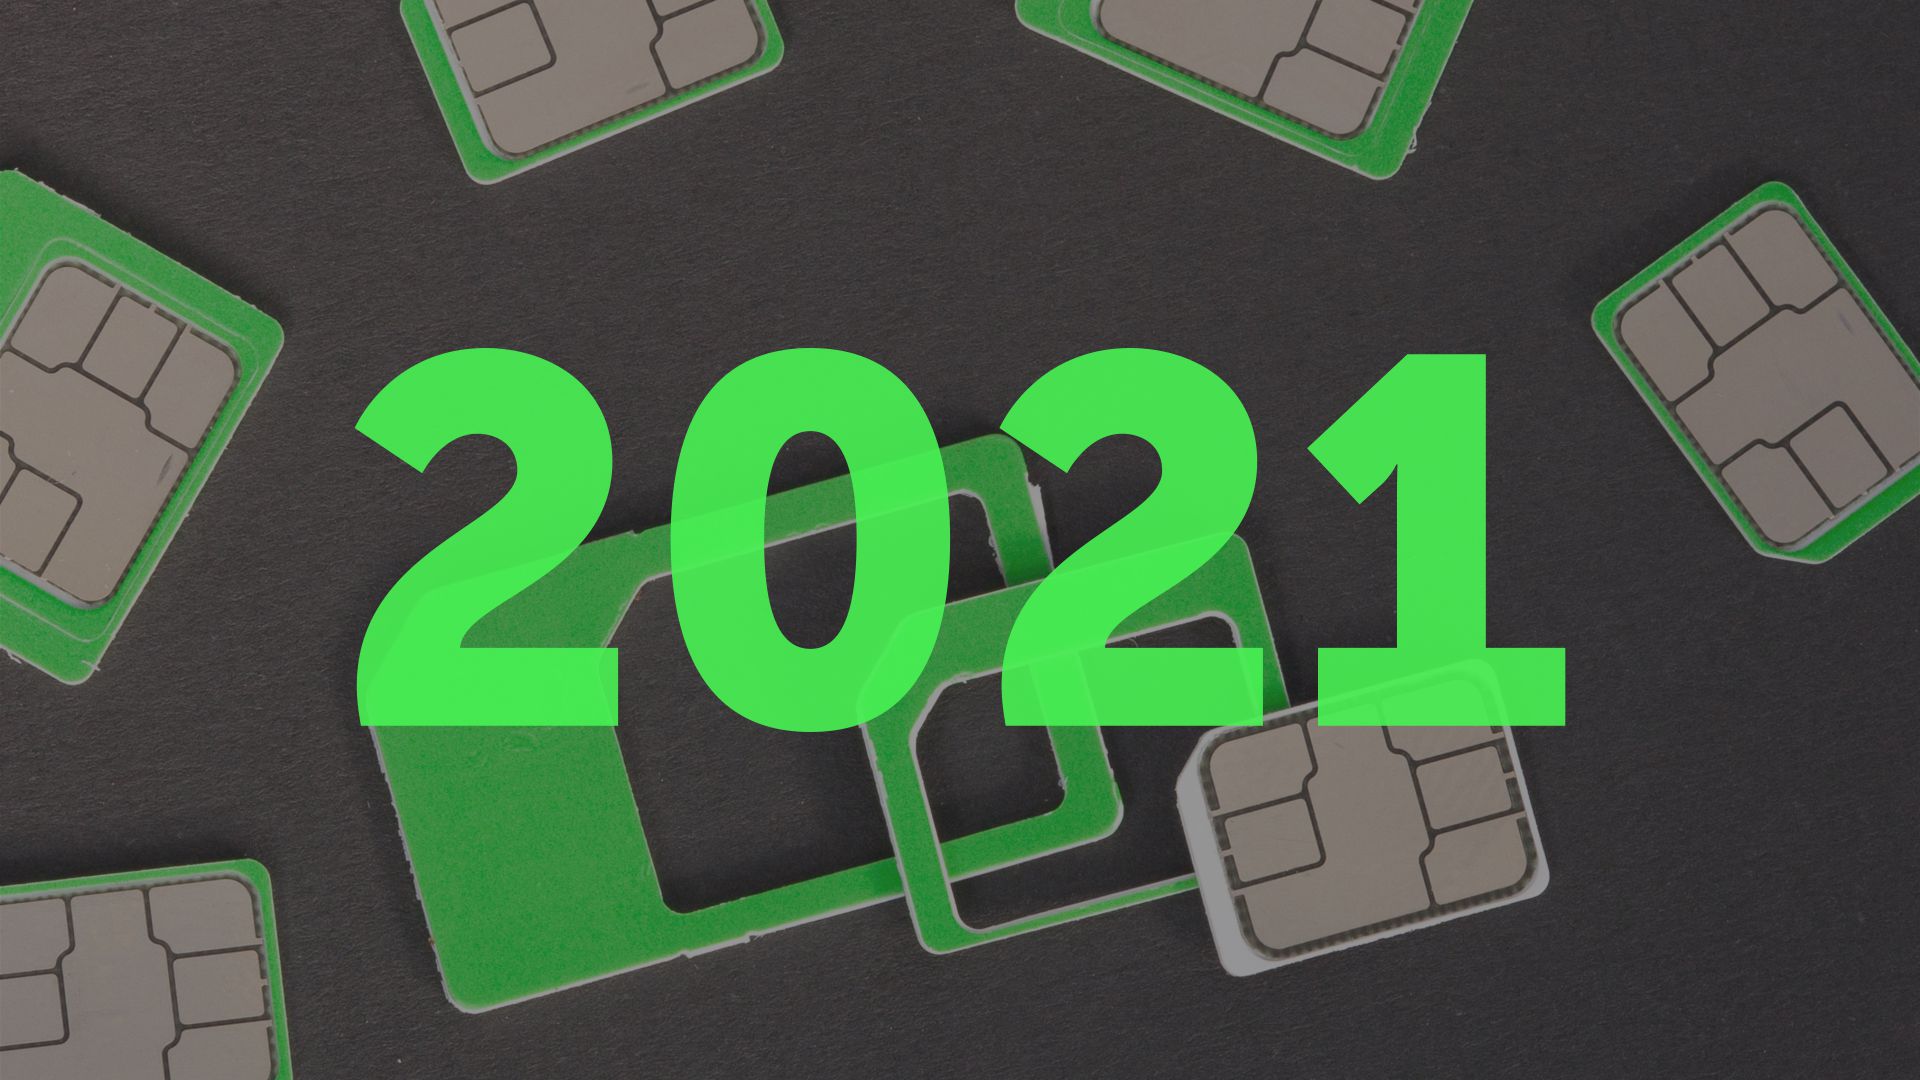 Nejlepší předplacená SIM karta 2021: Přehled předplacenek od 17 operátorů